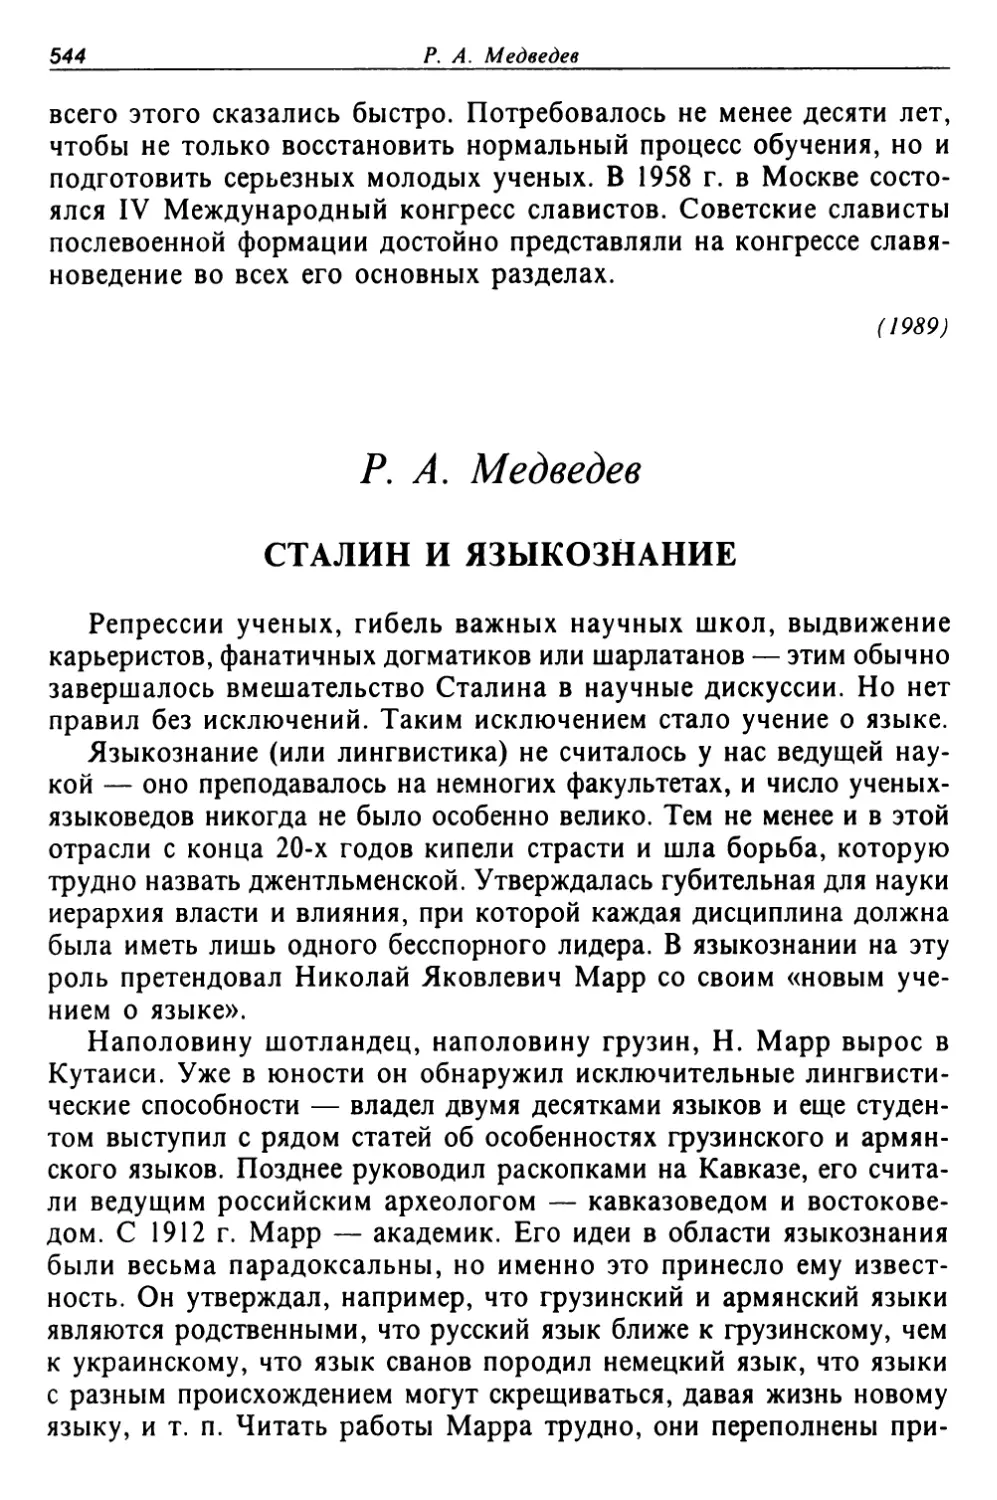 Медведев Р. А. Сталин и языкознание